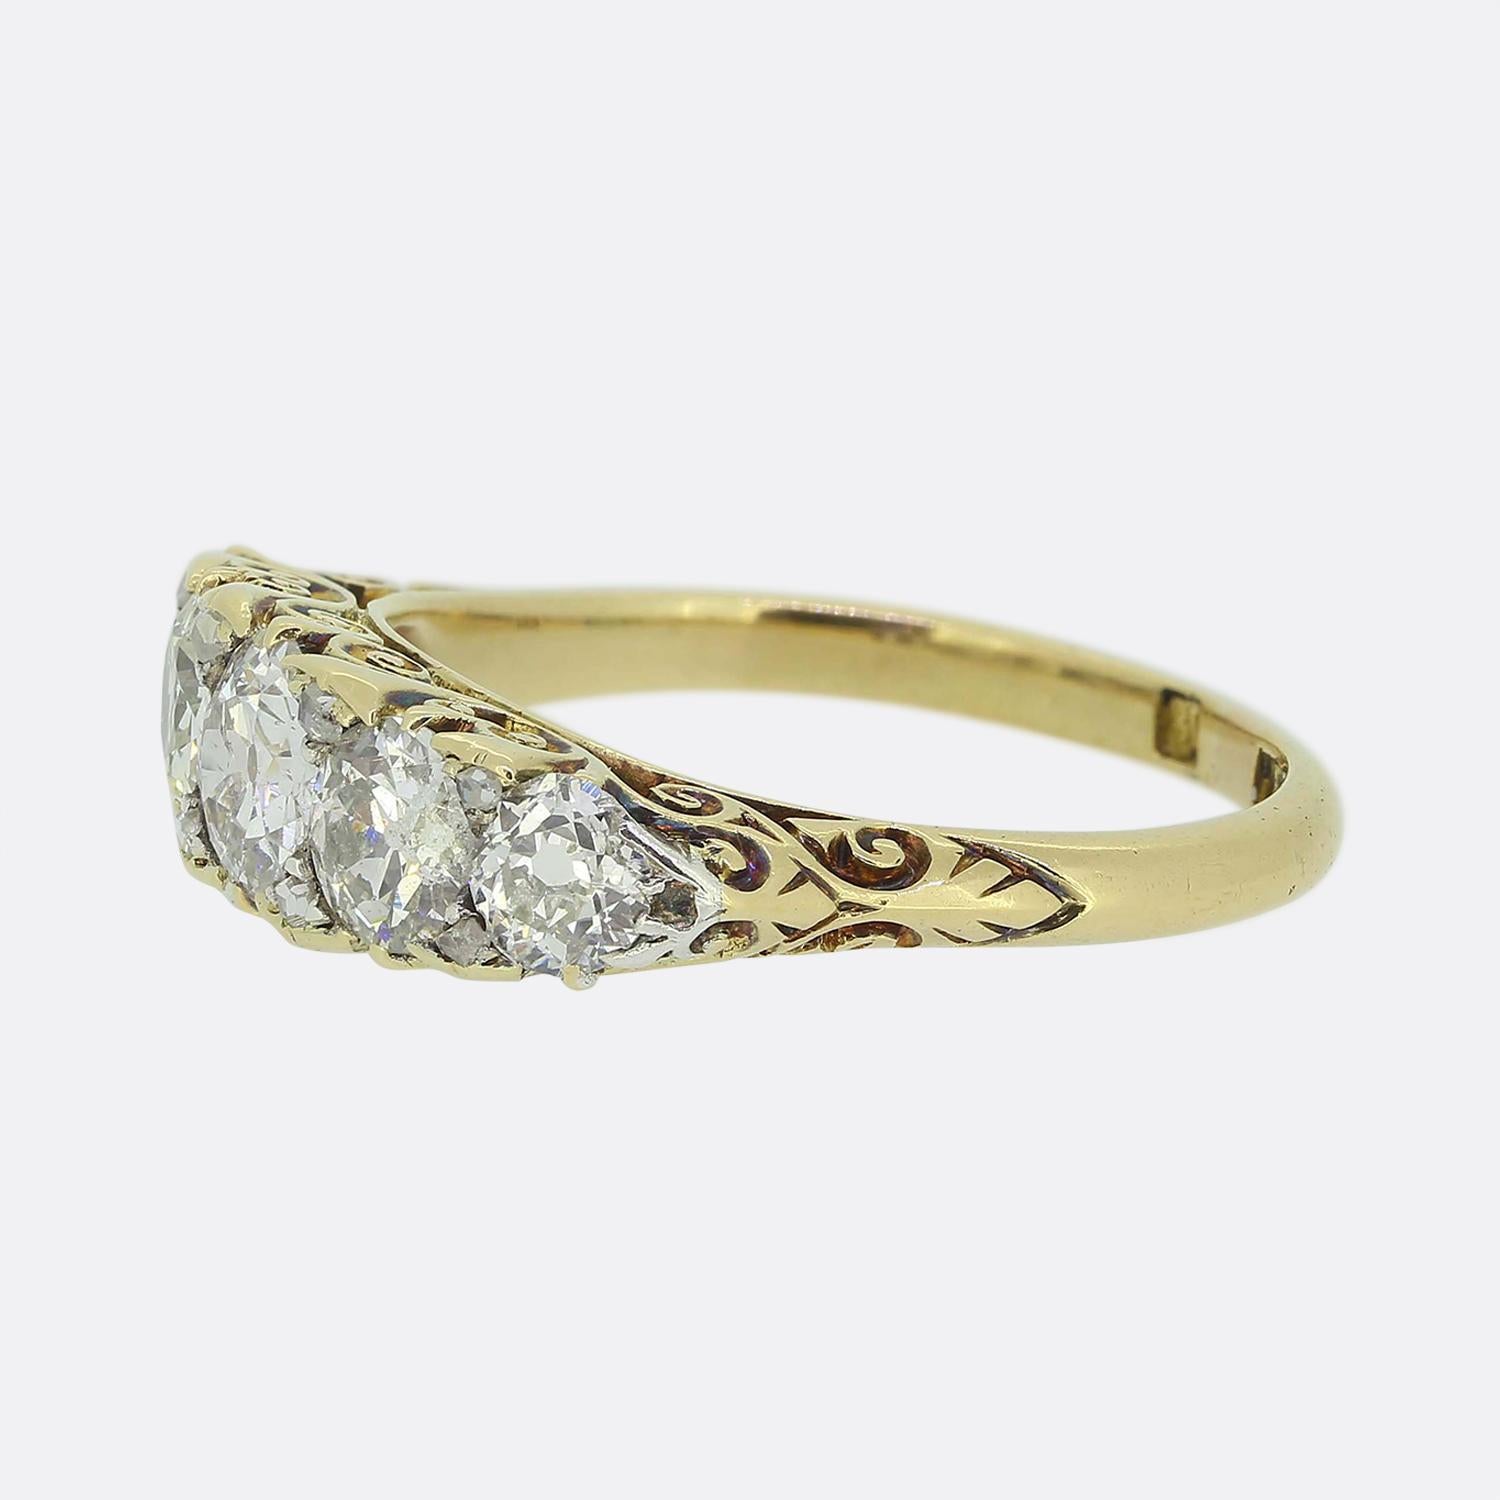 Hier haben wir einen schönen fünfsteinigen Diamantring aus der Edwardianischen Ära. Dieses antike Stück wurde aus warmem 18-karätigem Gelbgold gefertigt und beherbergt fünf runde, facettierte Diamanten im alten europäischen Schliff, die zur Mitte